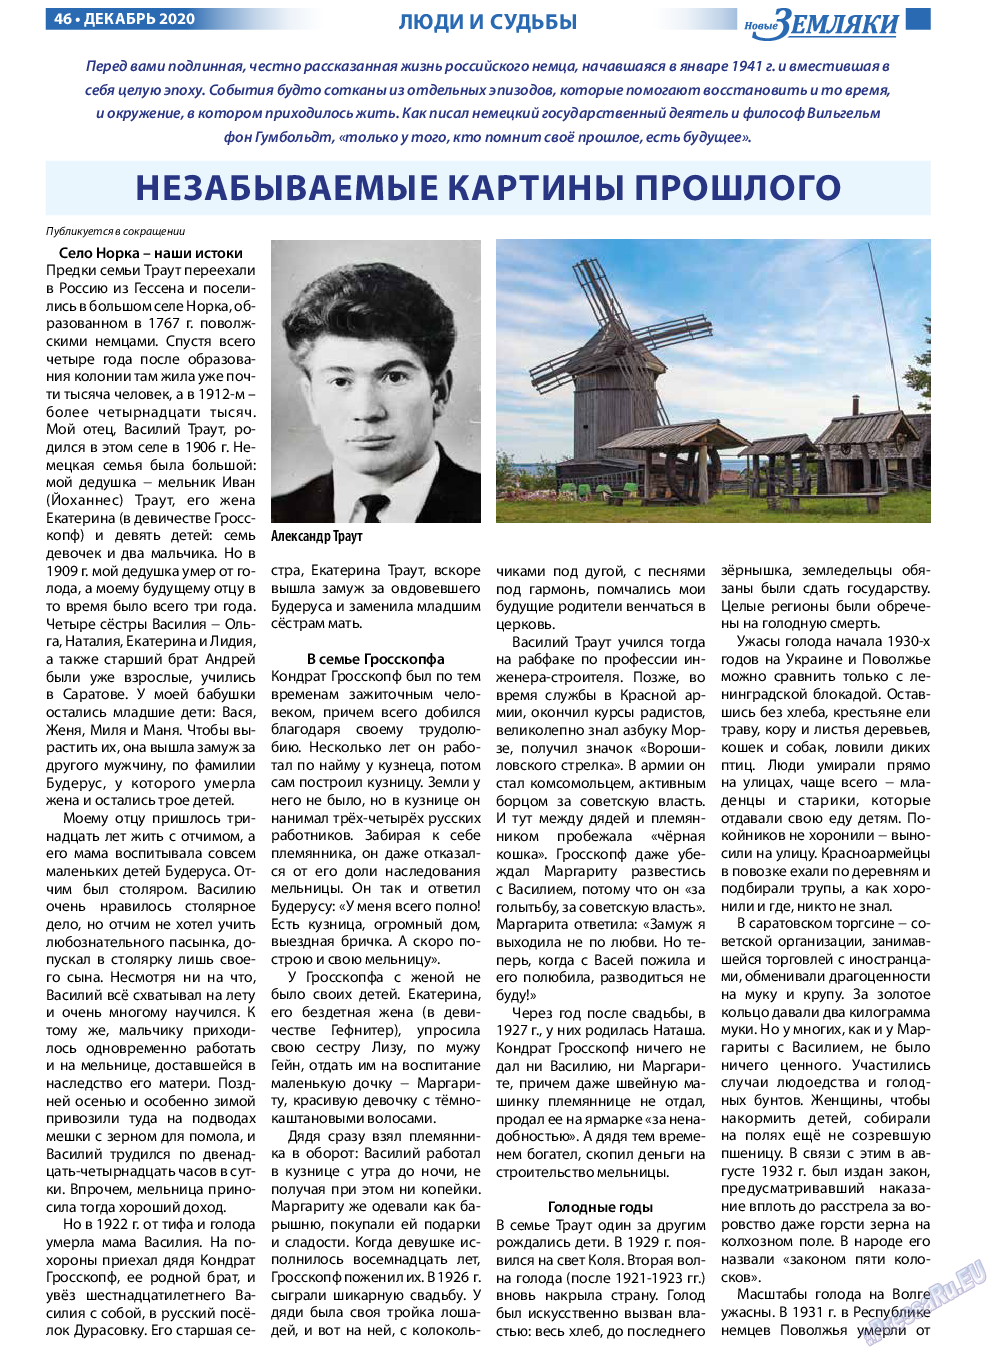 Новые Земляки, газета. 2020 №12 стр.46